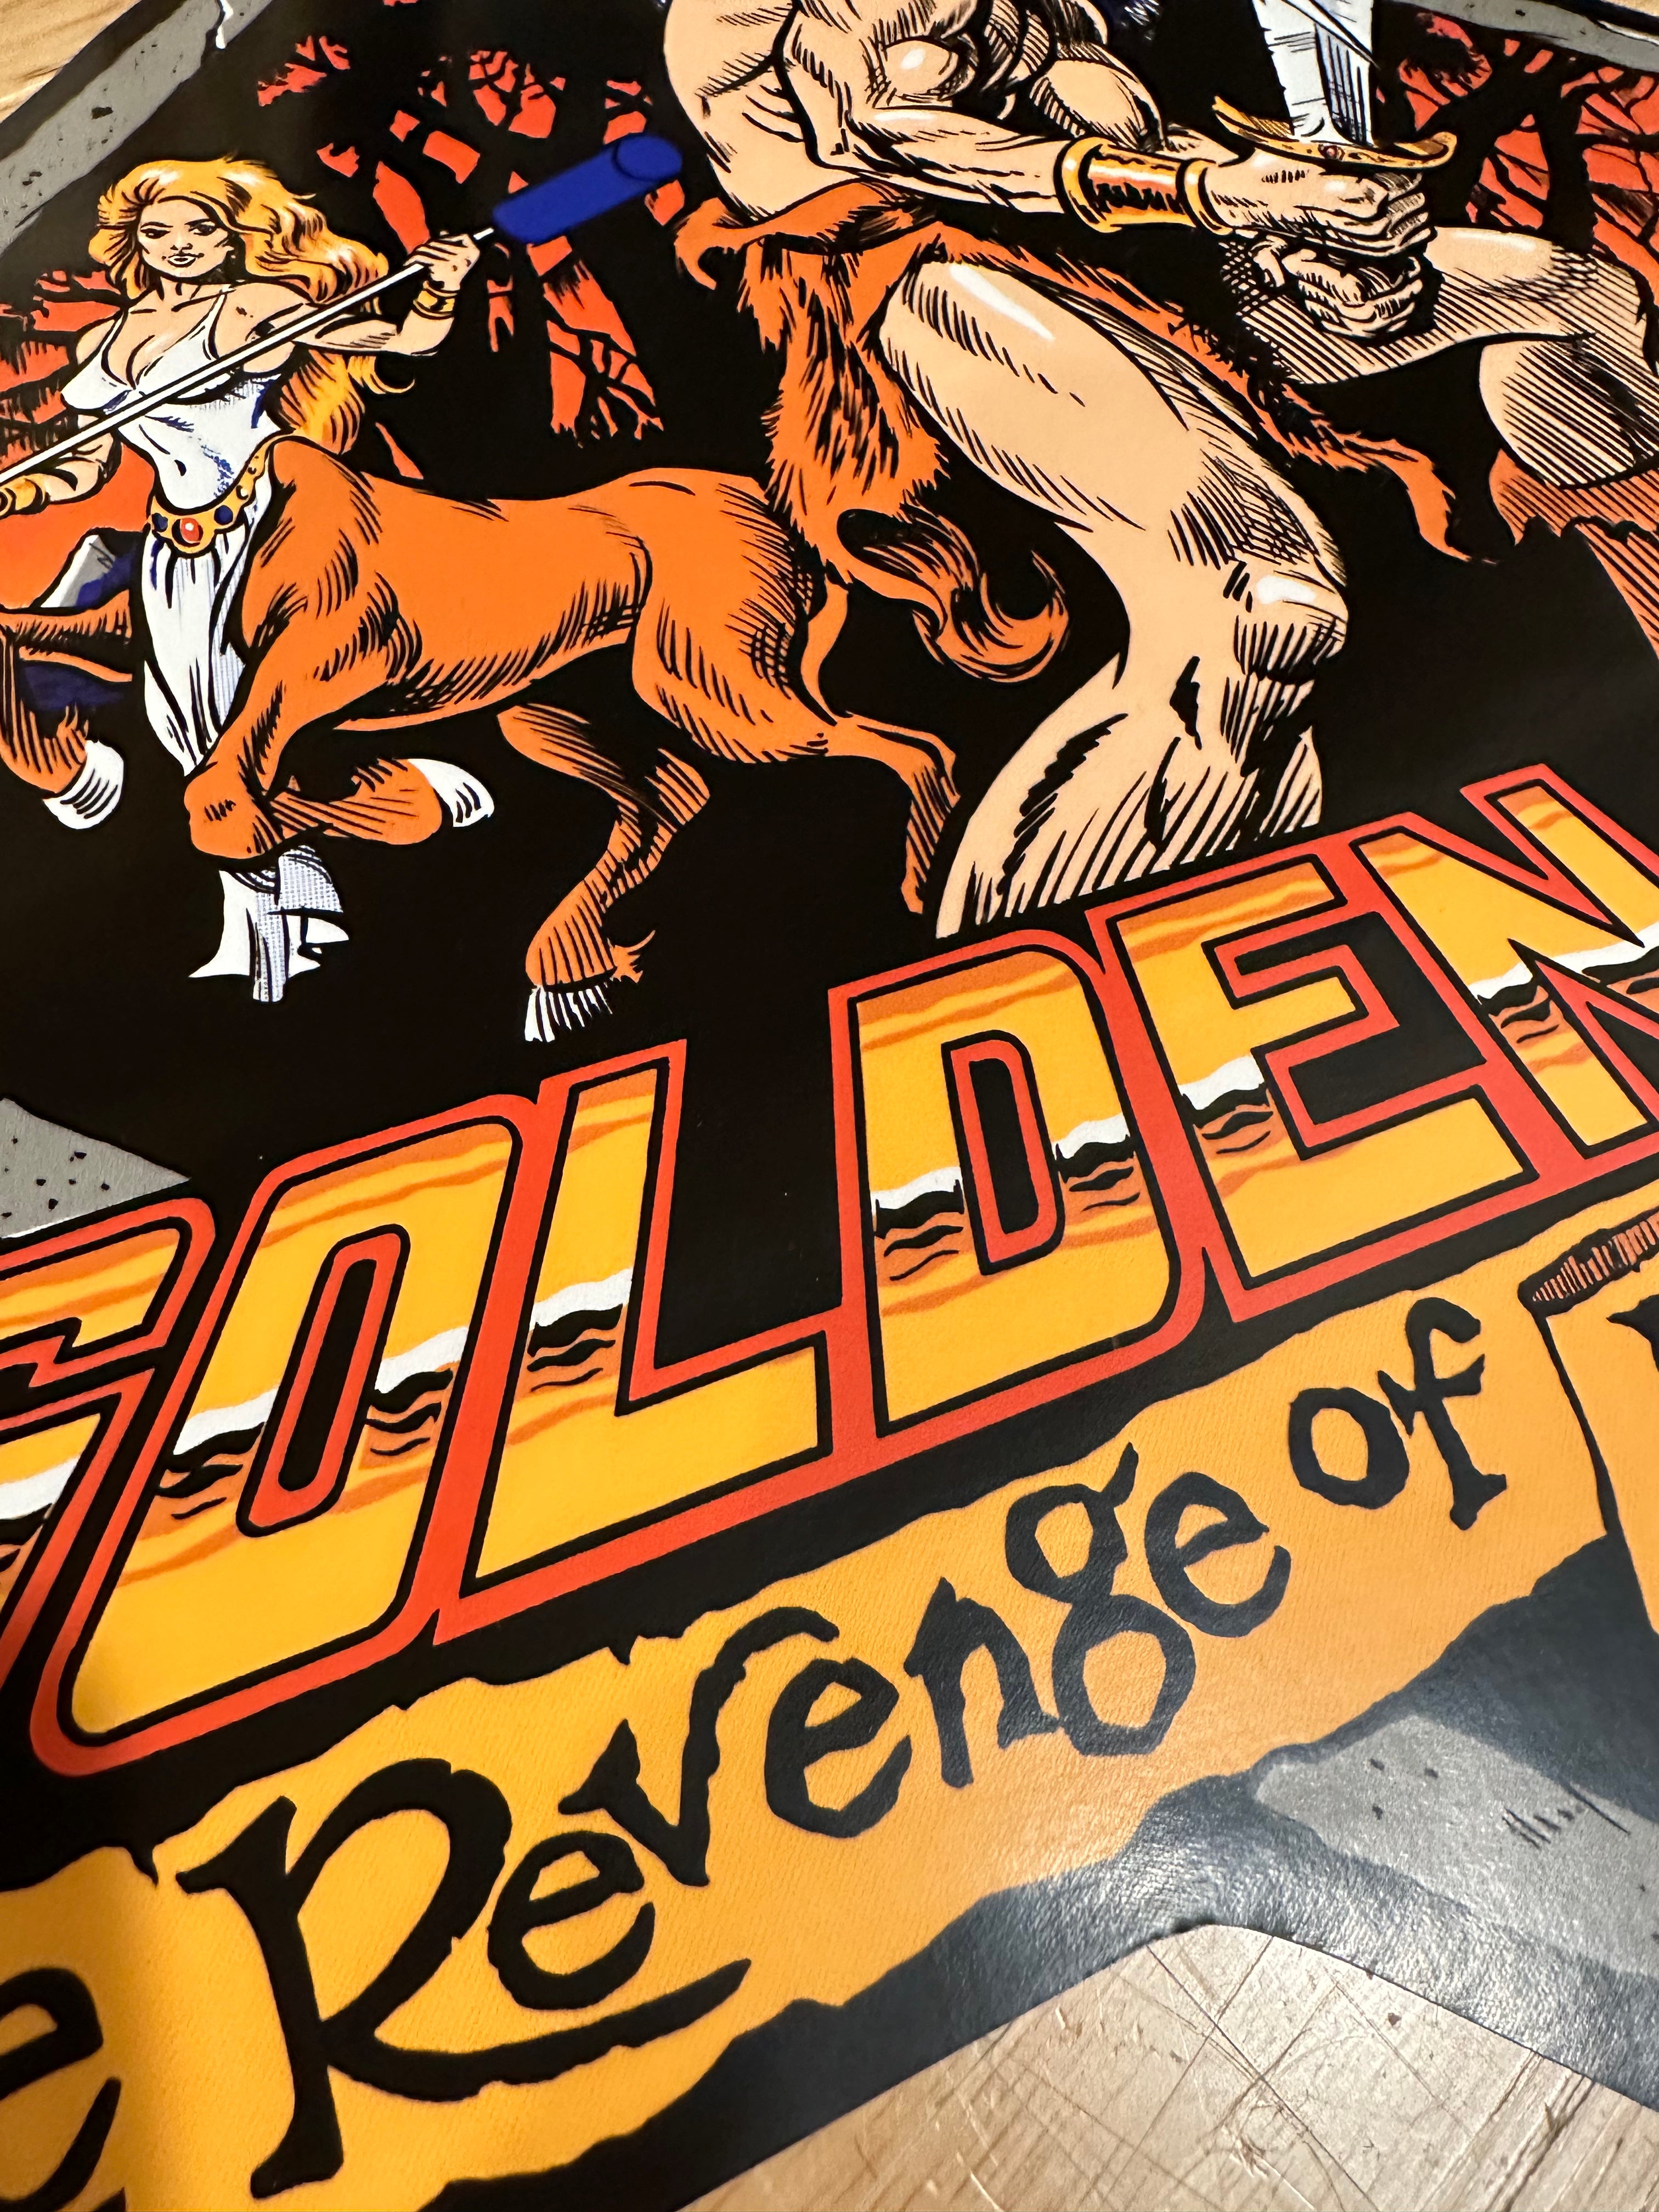 Golden Axe The Revenge of Death Adder Side Art